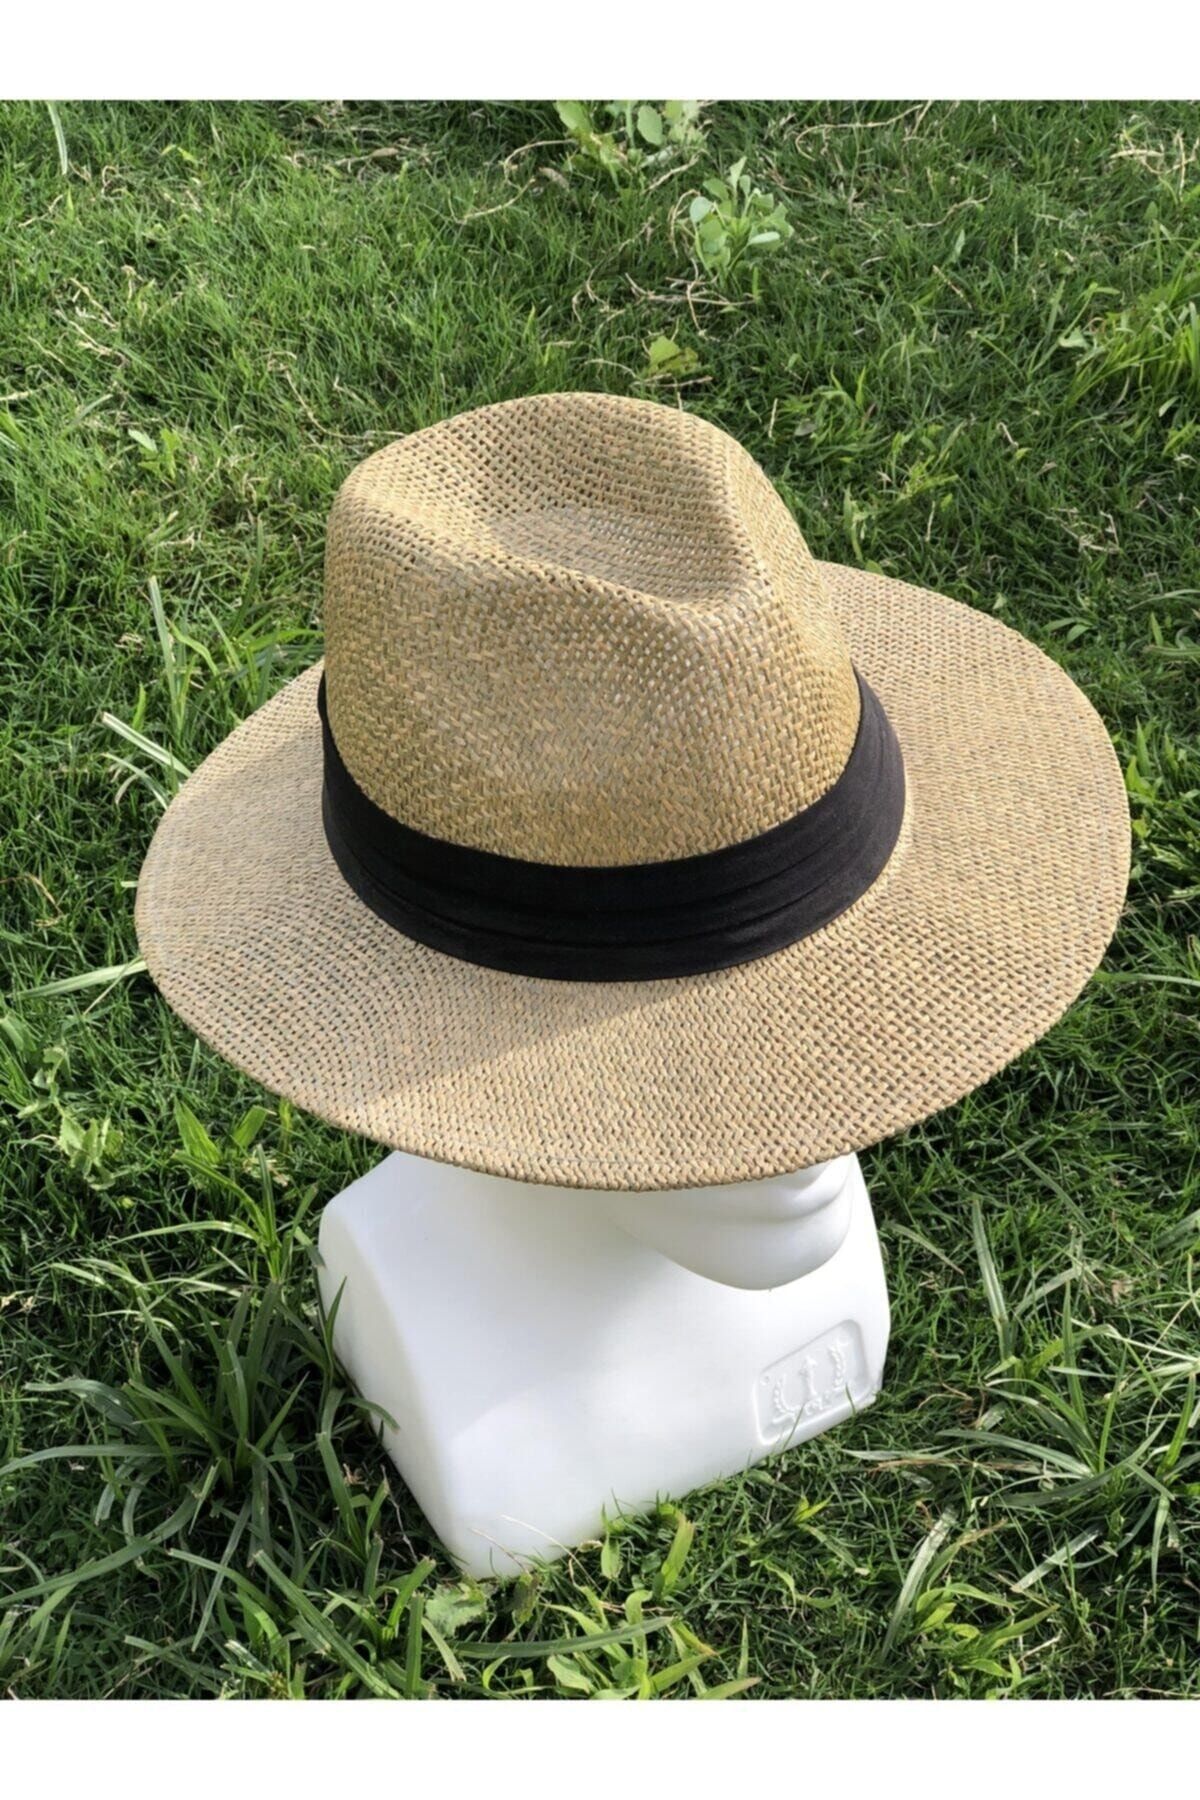 Sunlight Gift Unısex Hasır Şapka